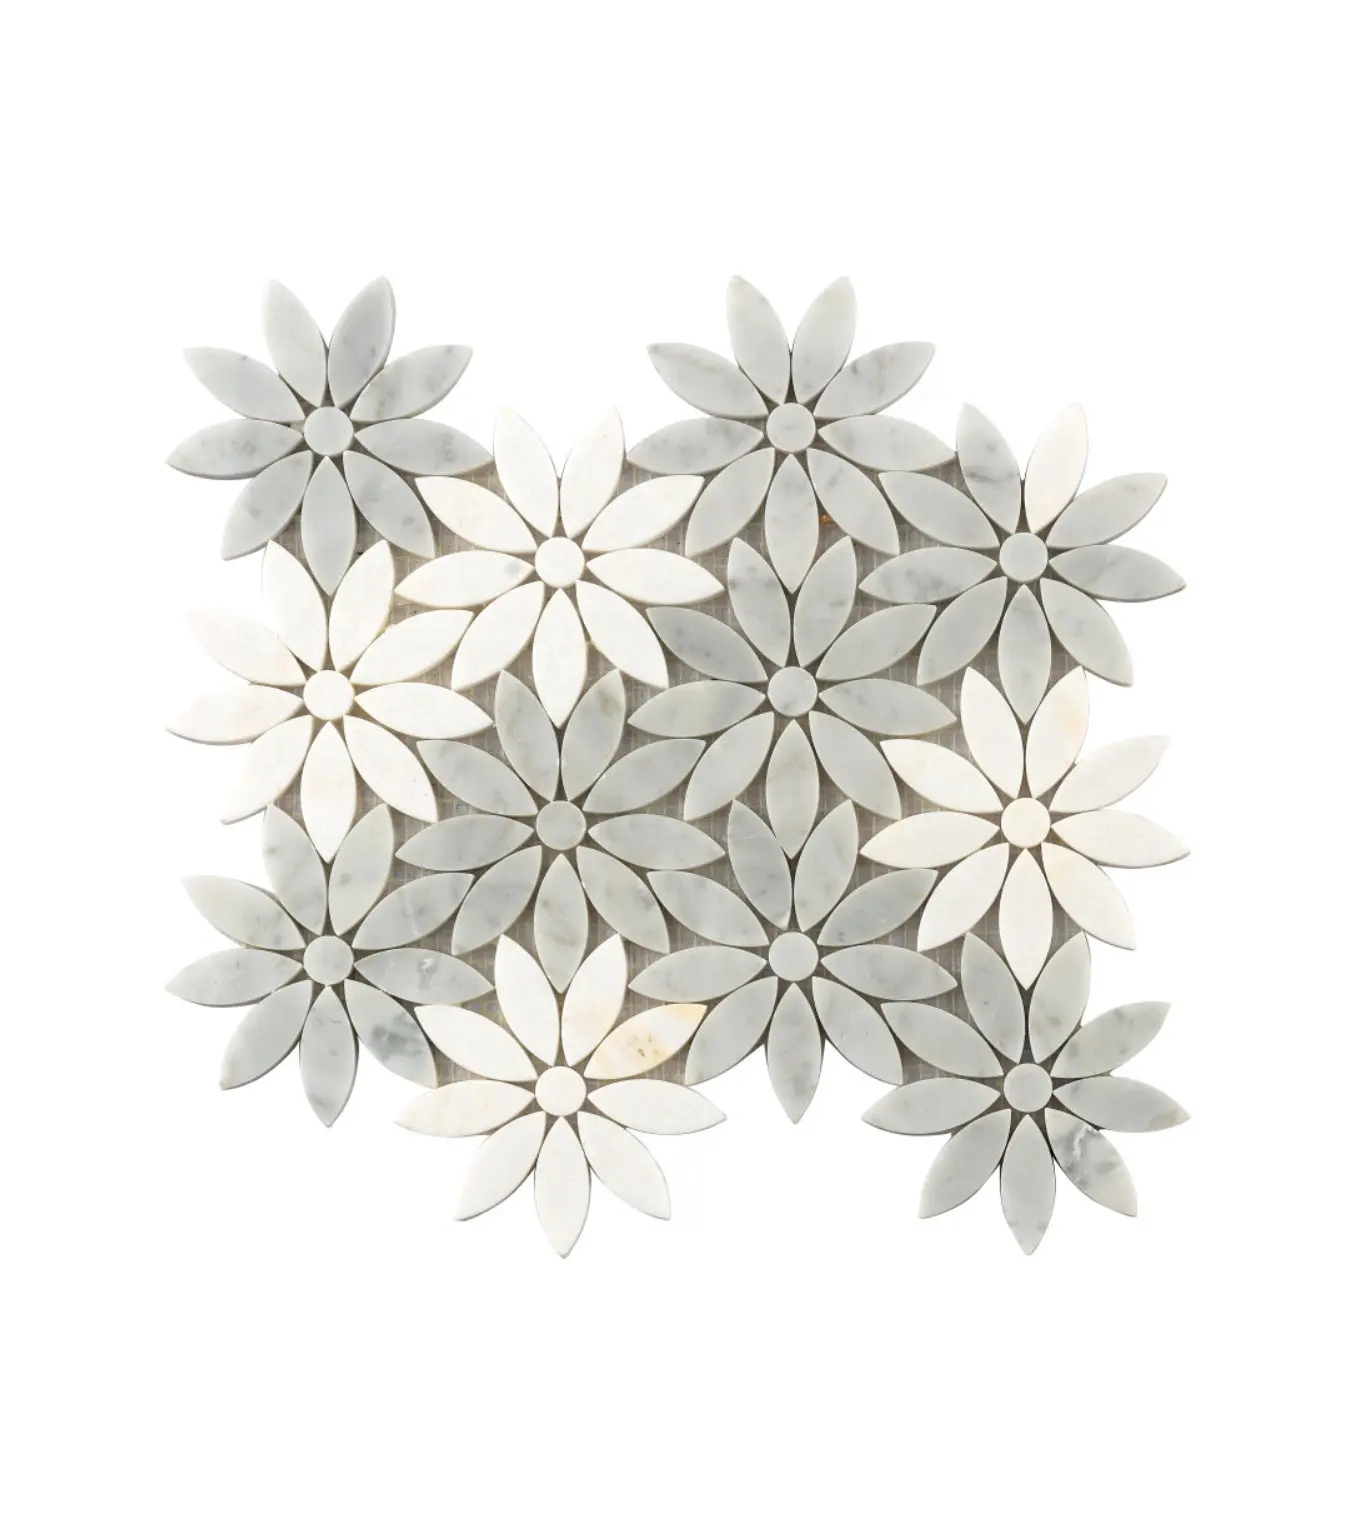 Tessere di mosaico di marmo su misura su misura del modello di arte del fiore grigio bianco fatto a mano